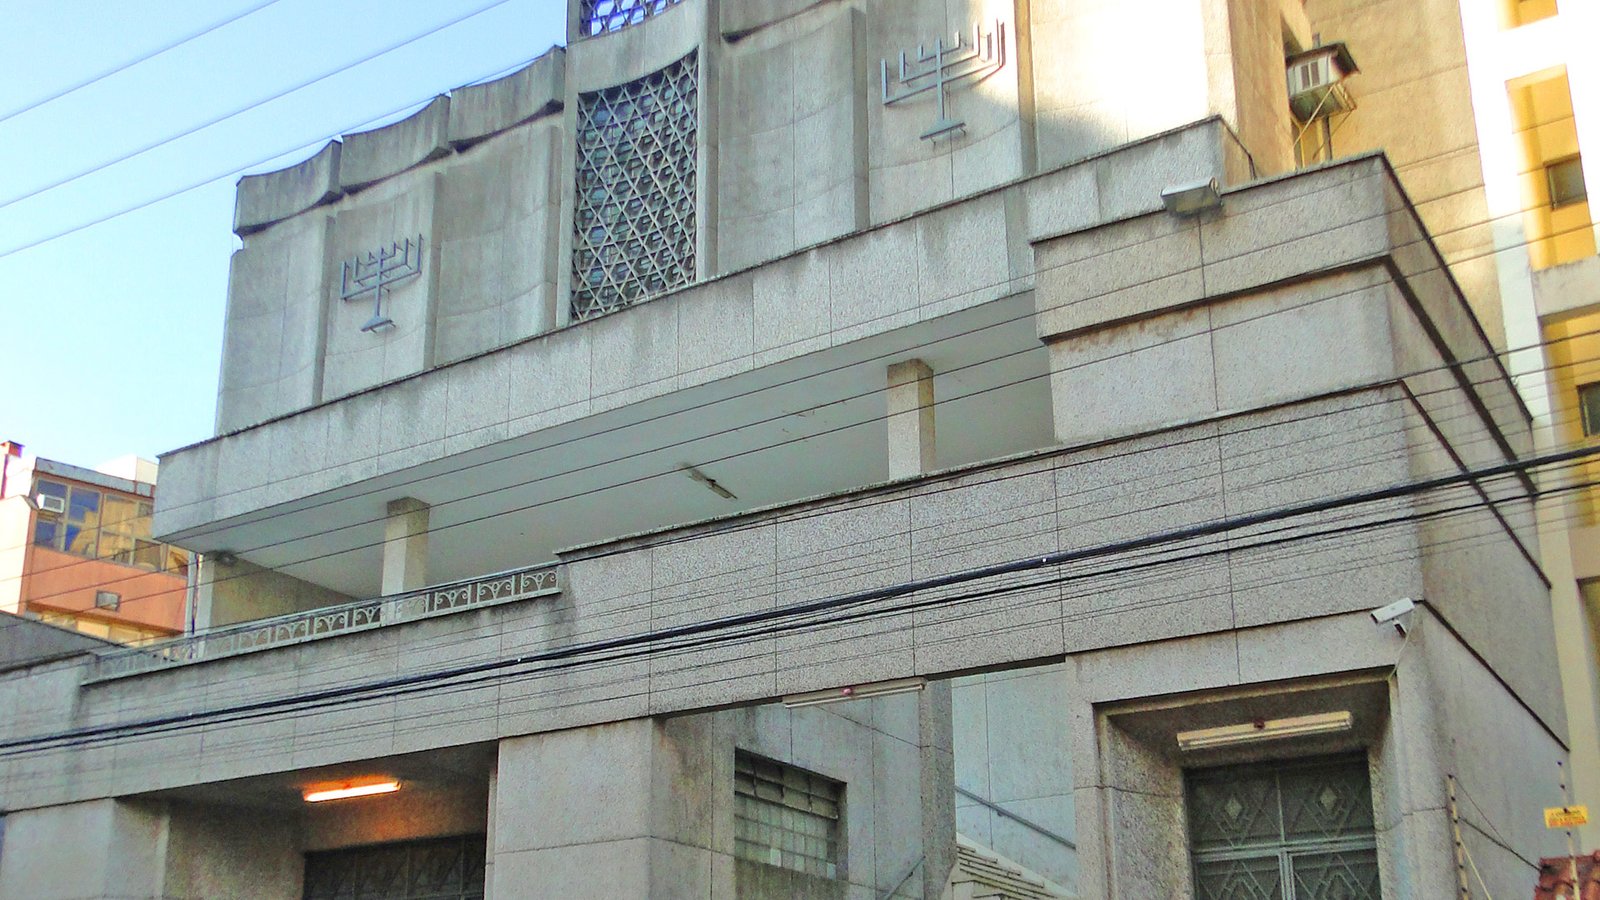 Sinagoga União Israelita de Porto Alegre